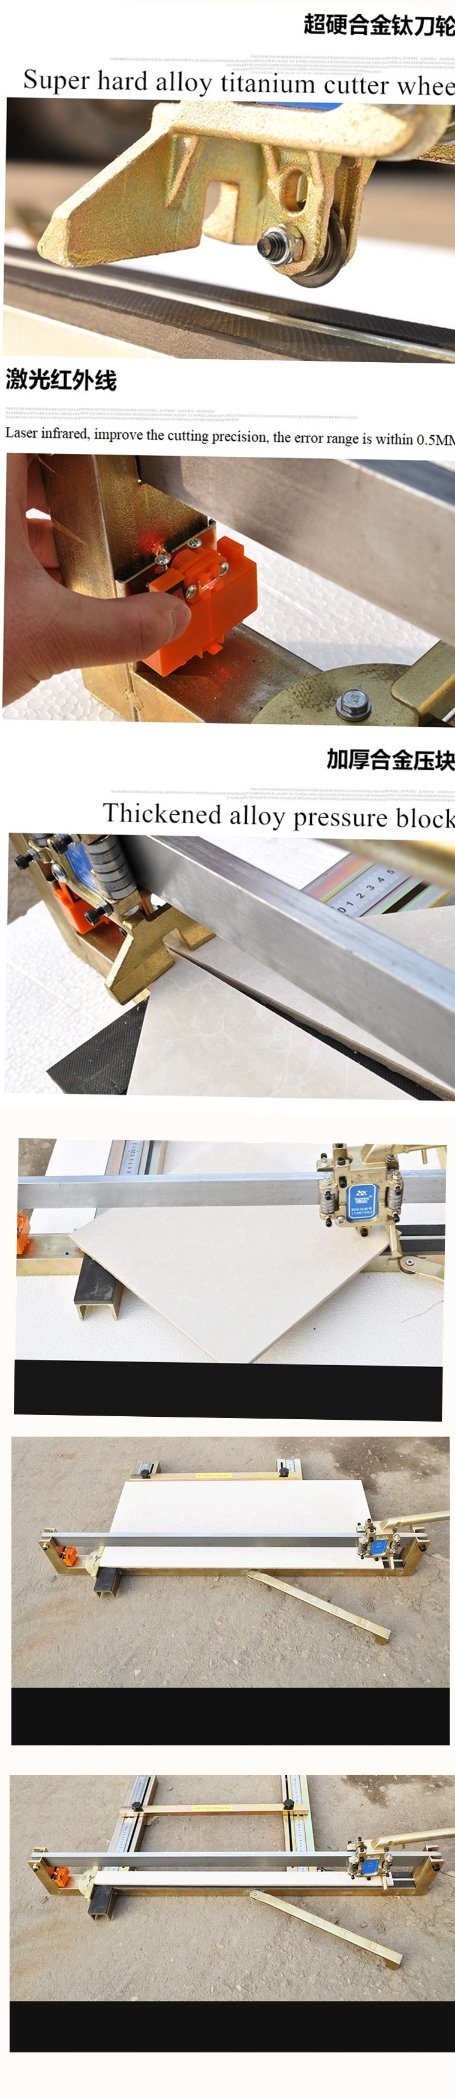 Heavy Duty Manual Tile Cutter